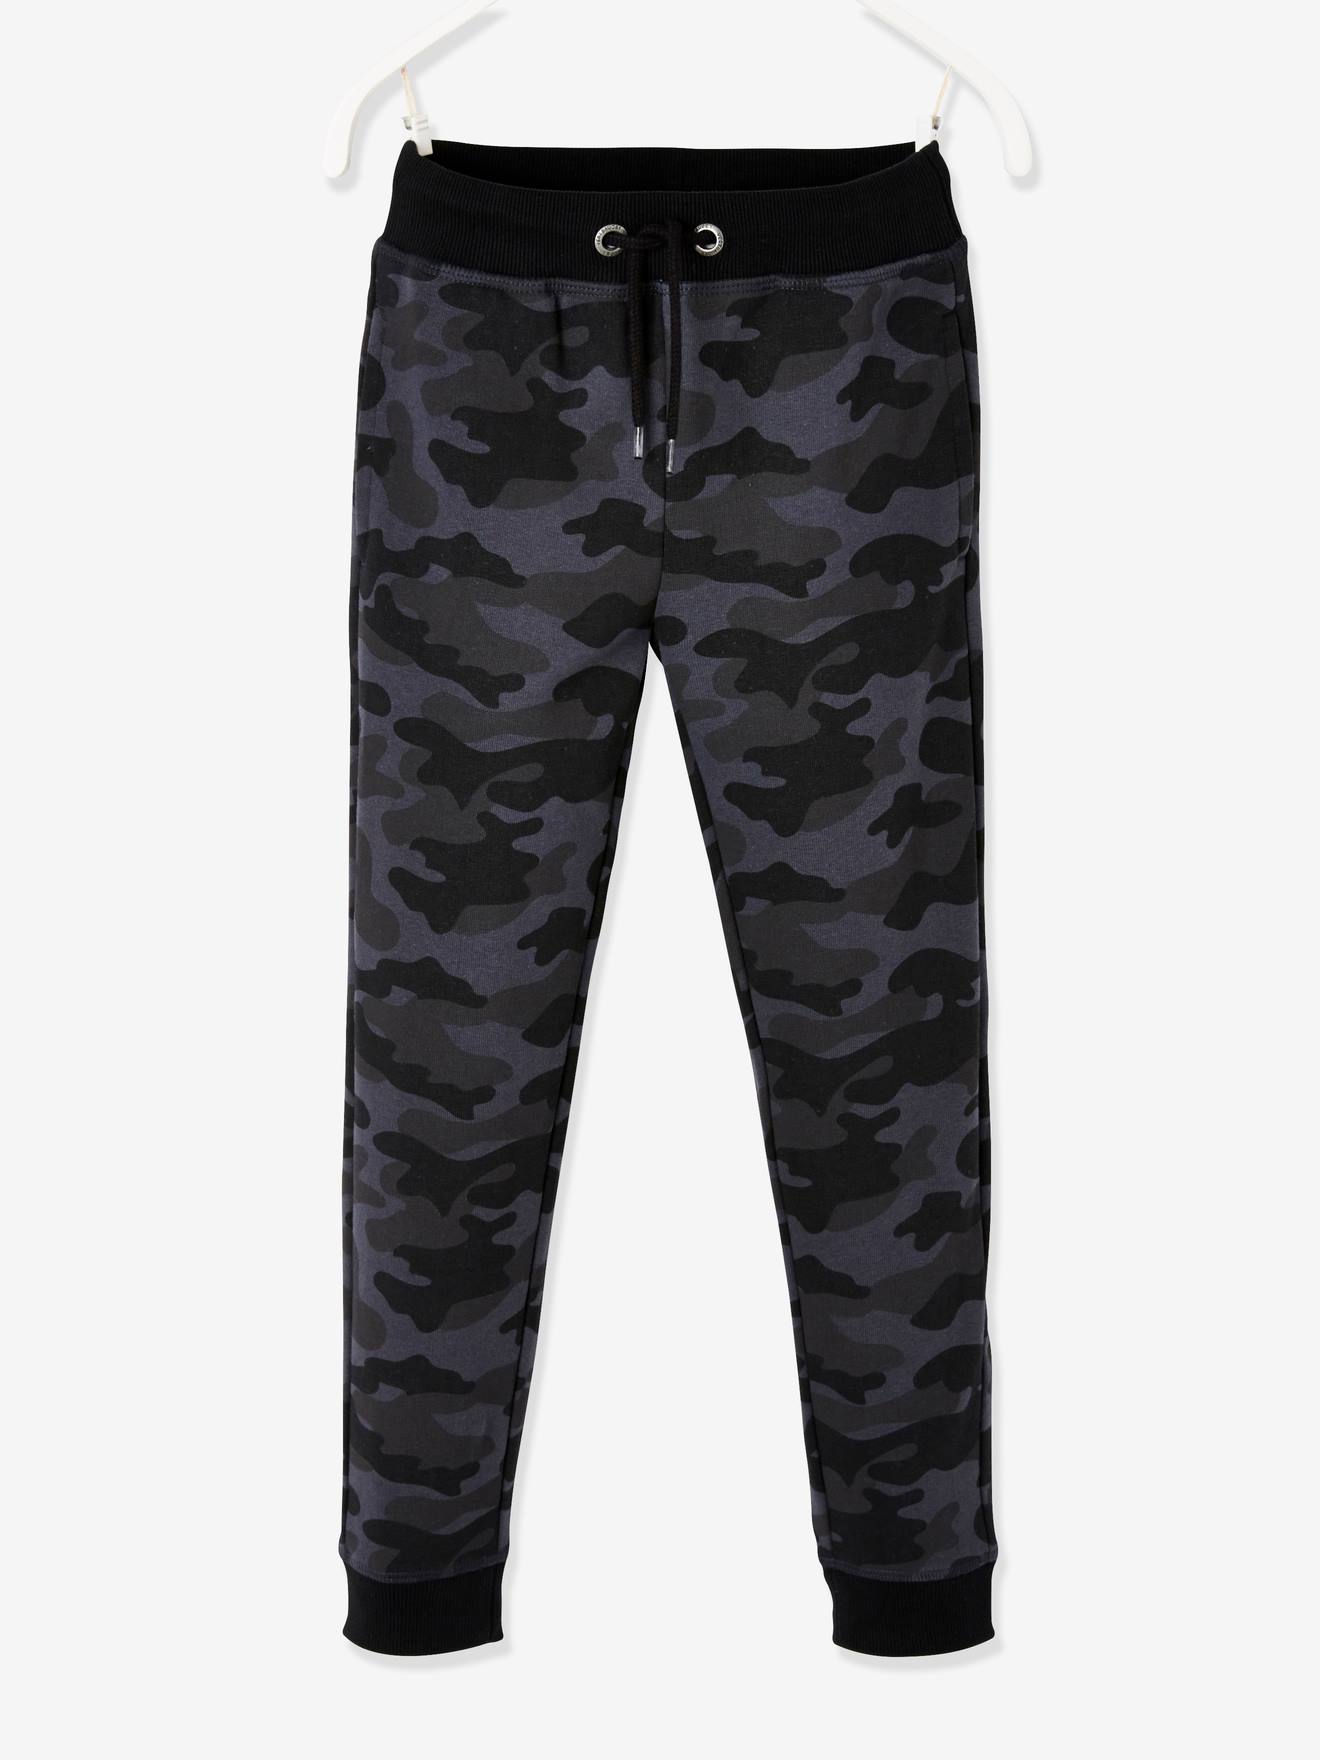 Pantalon de sport garçon en molleton motif camouflage noir imprimé